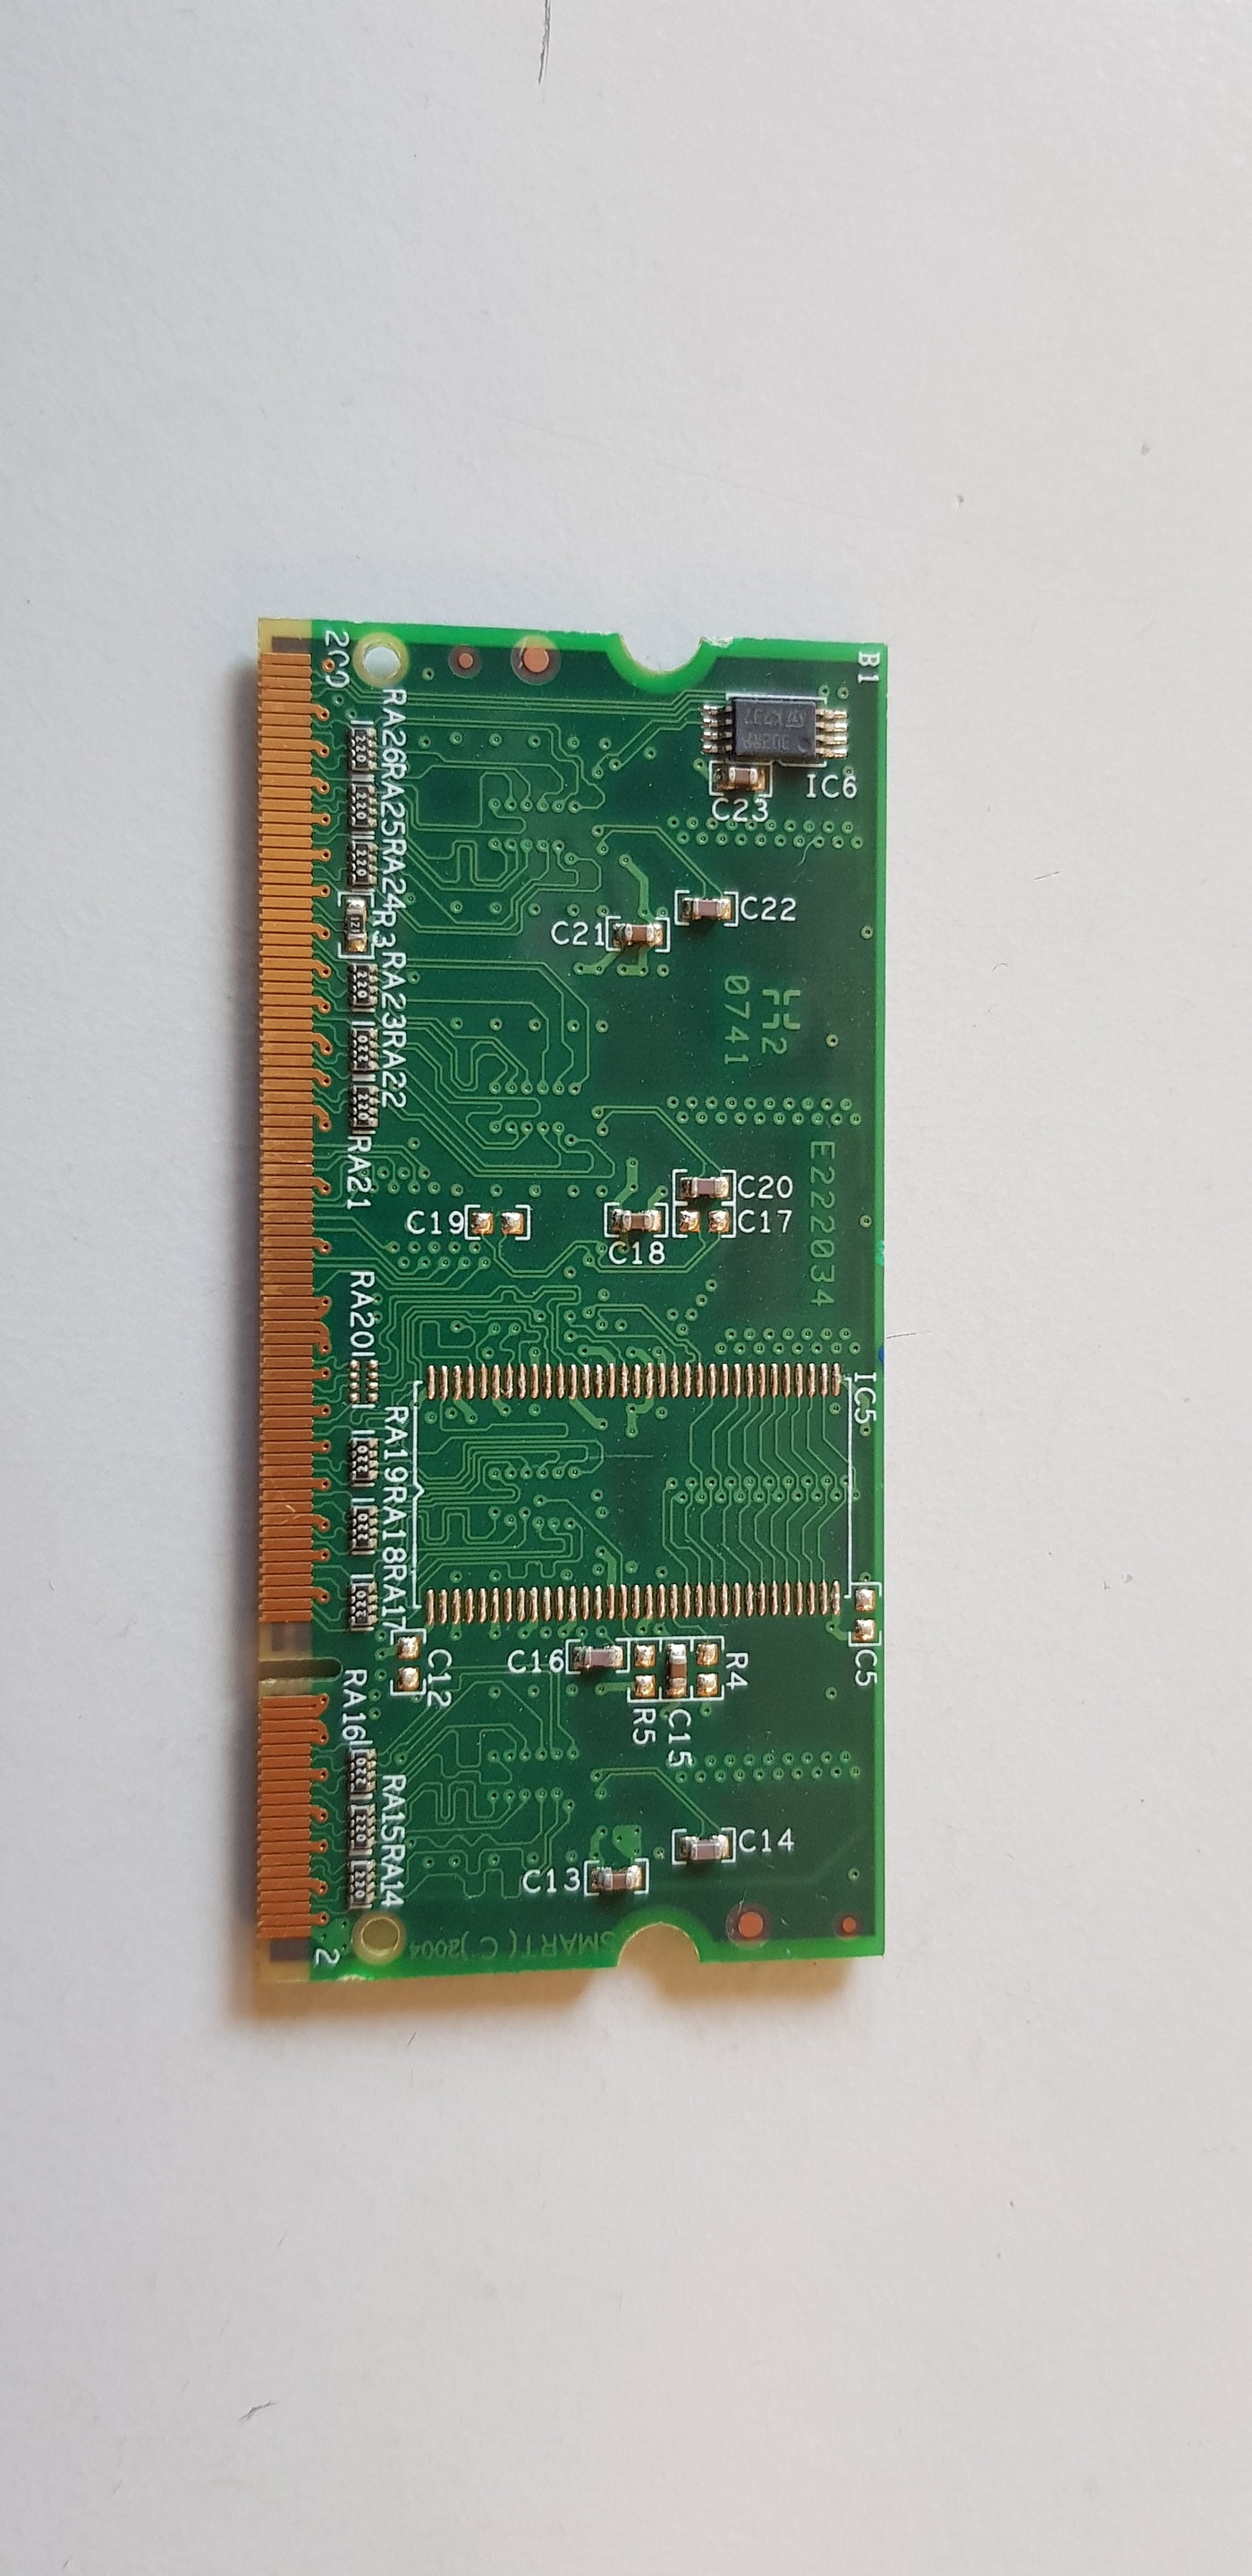 HP 128MB PC2100 DDR-266MHz Unbuffered CL2 SoDimm Q7721-60001 Q7721AX